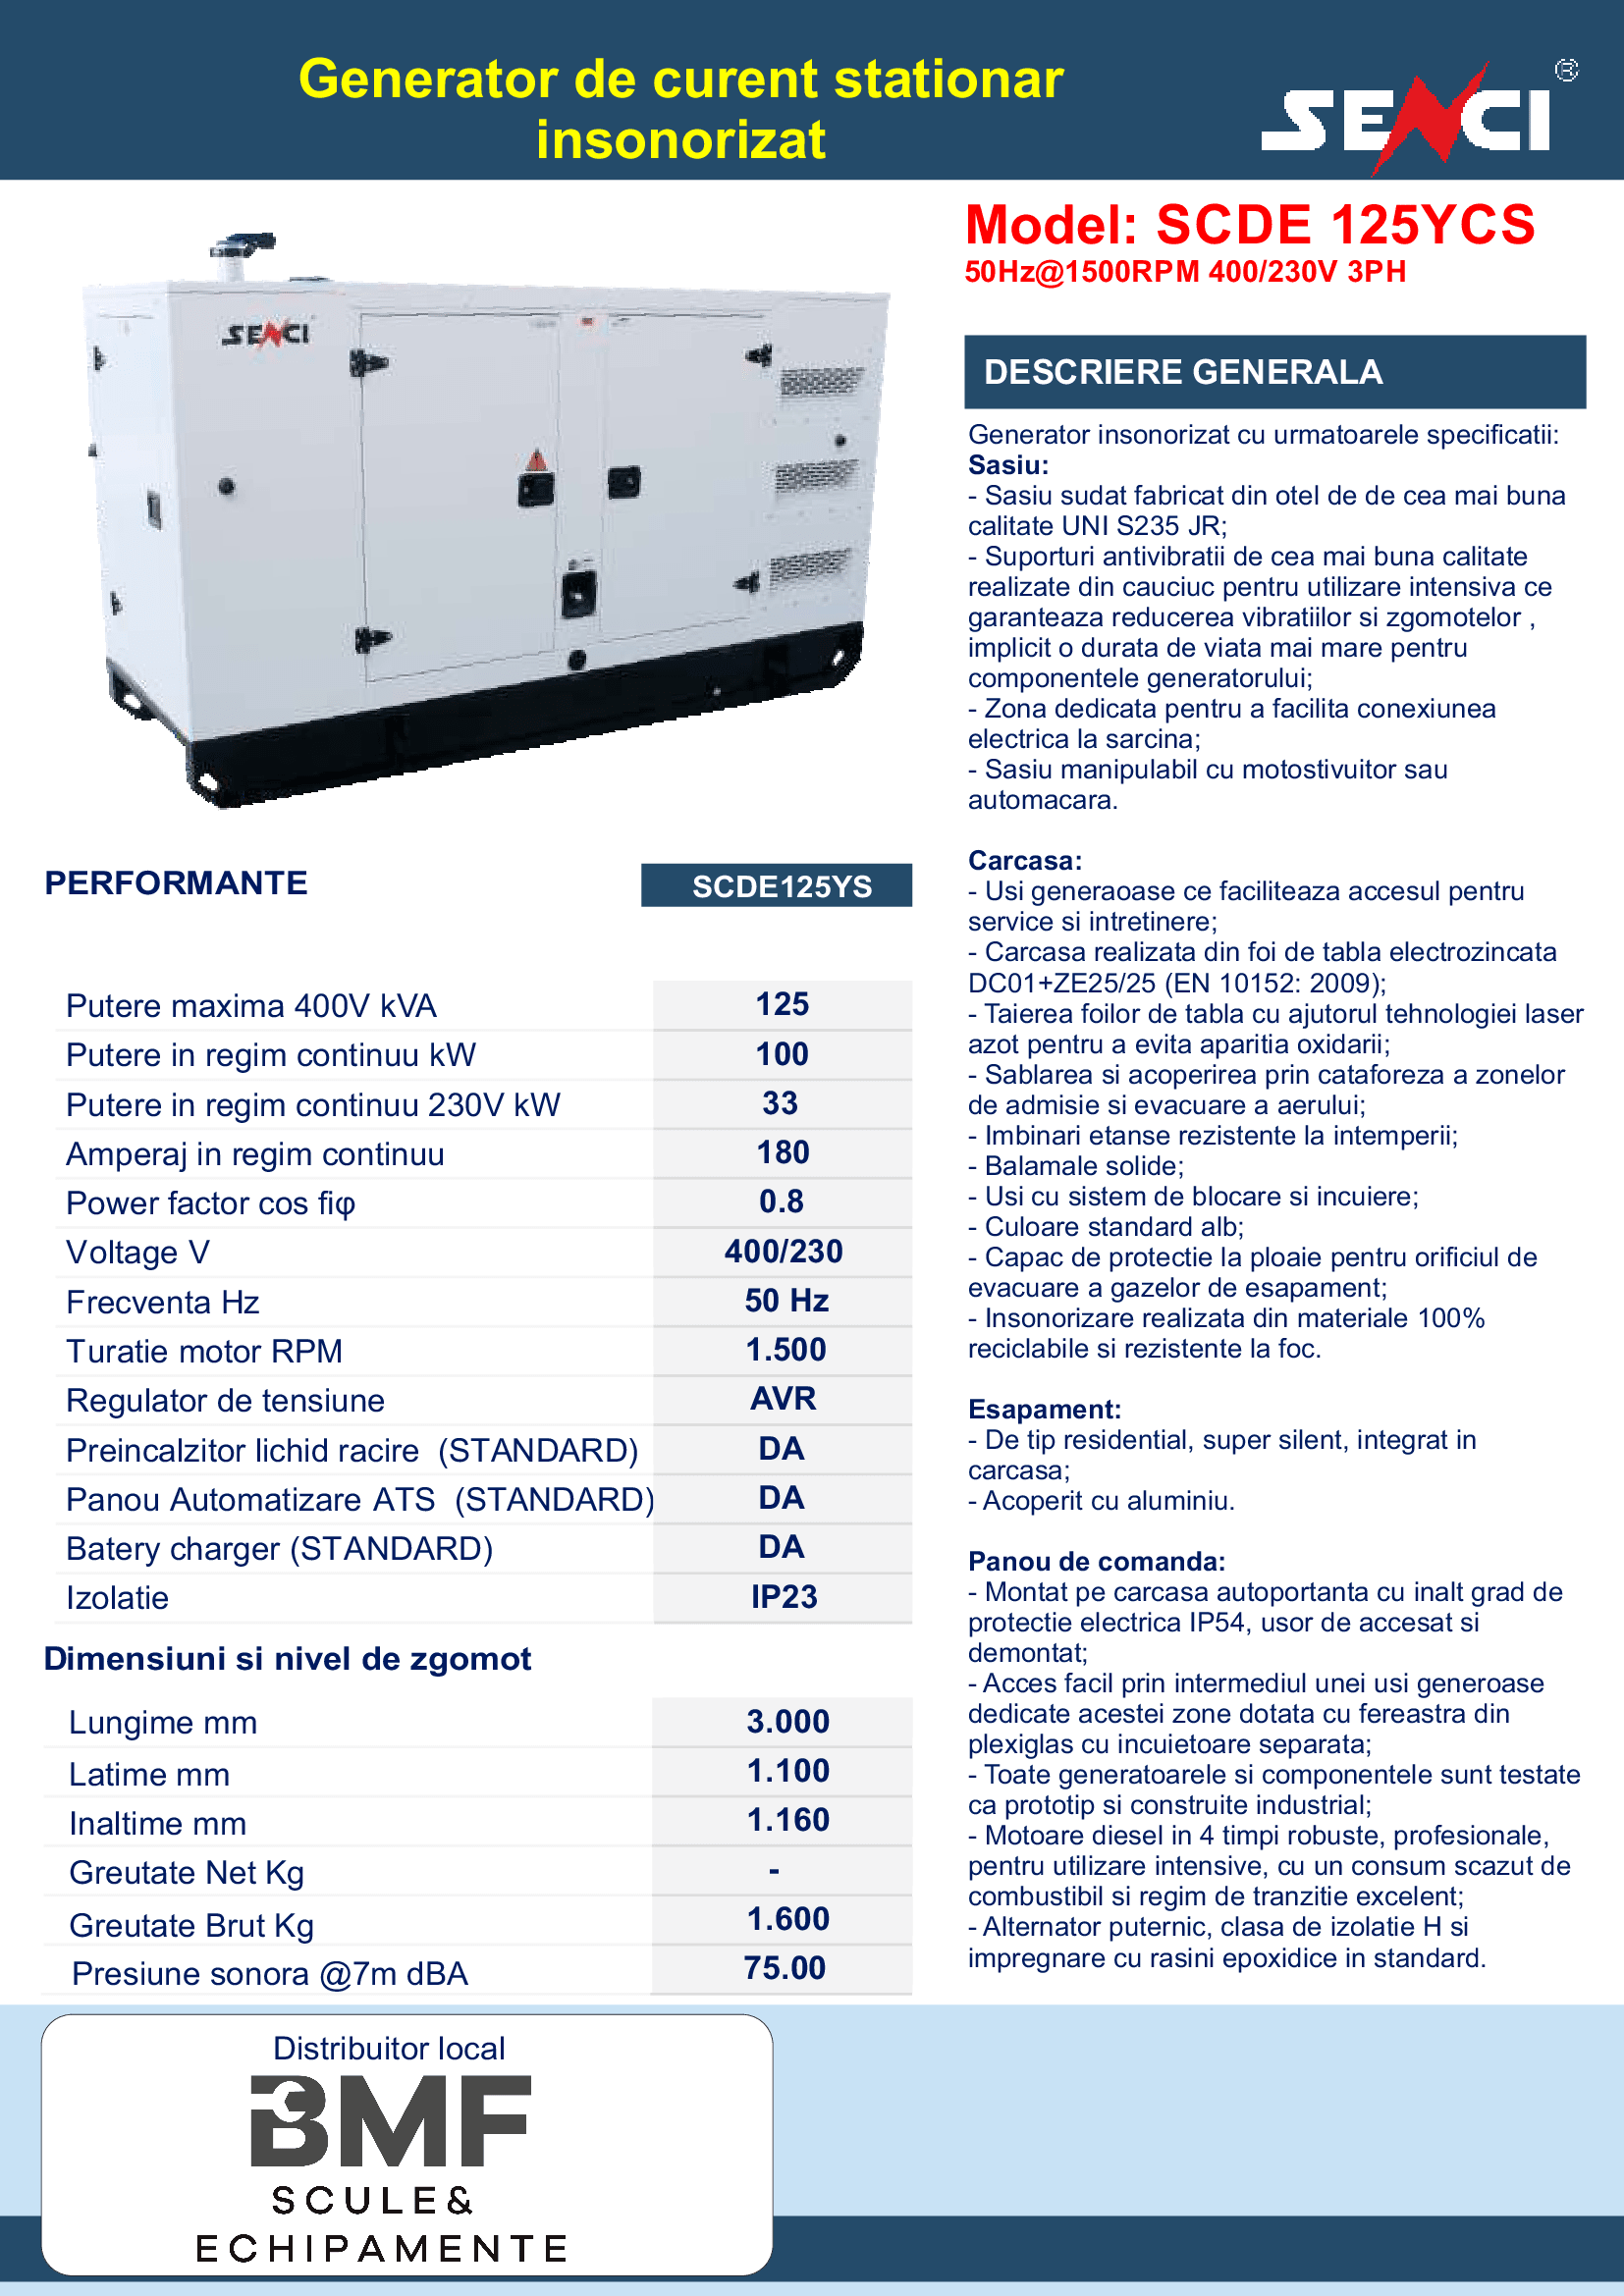 SCDE 125YCS Generator de curent insonorizat Senci Distribuitor